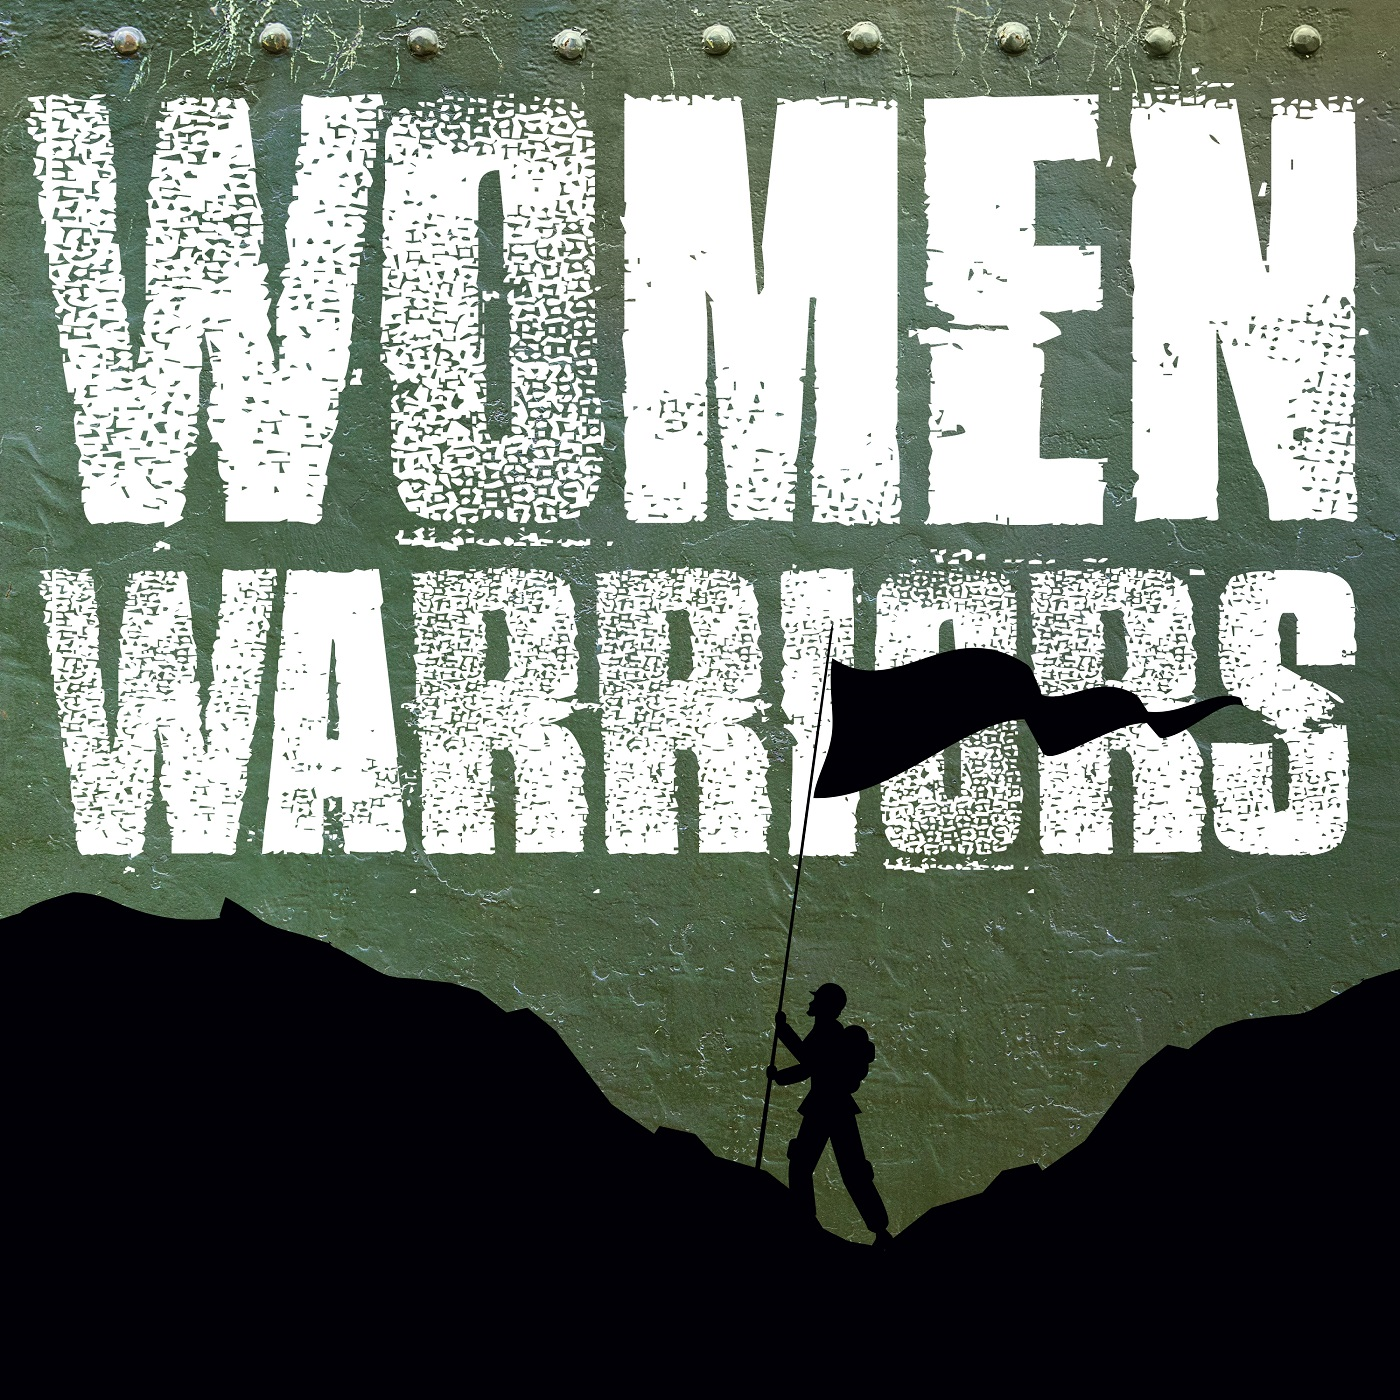 Women Warriors: Kate Germano- Too Tough for Marines?